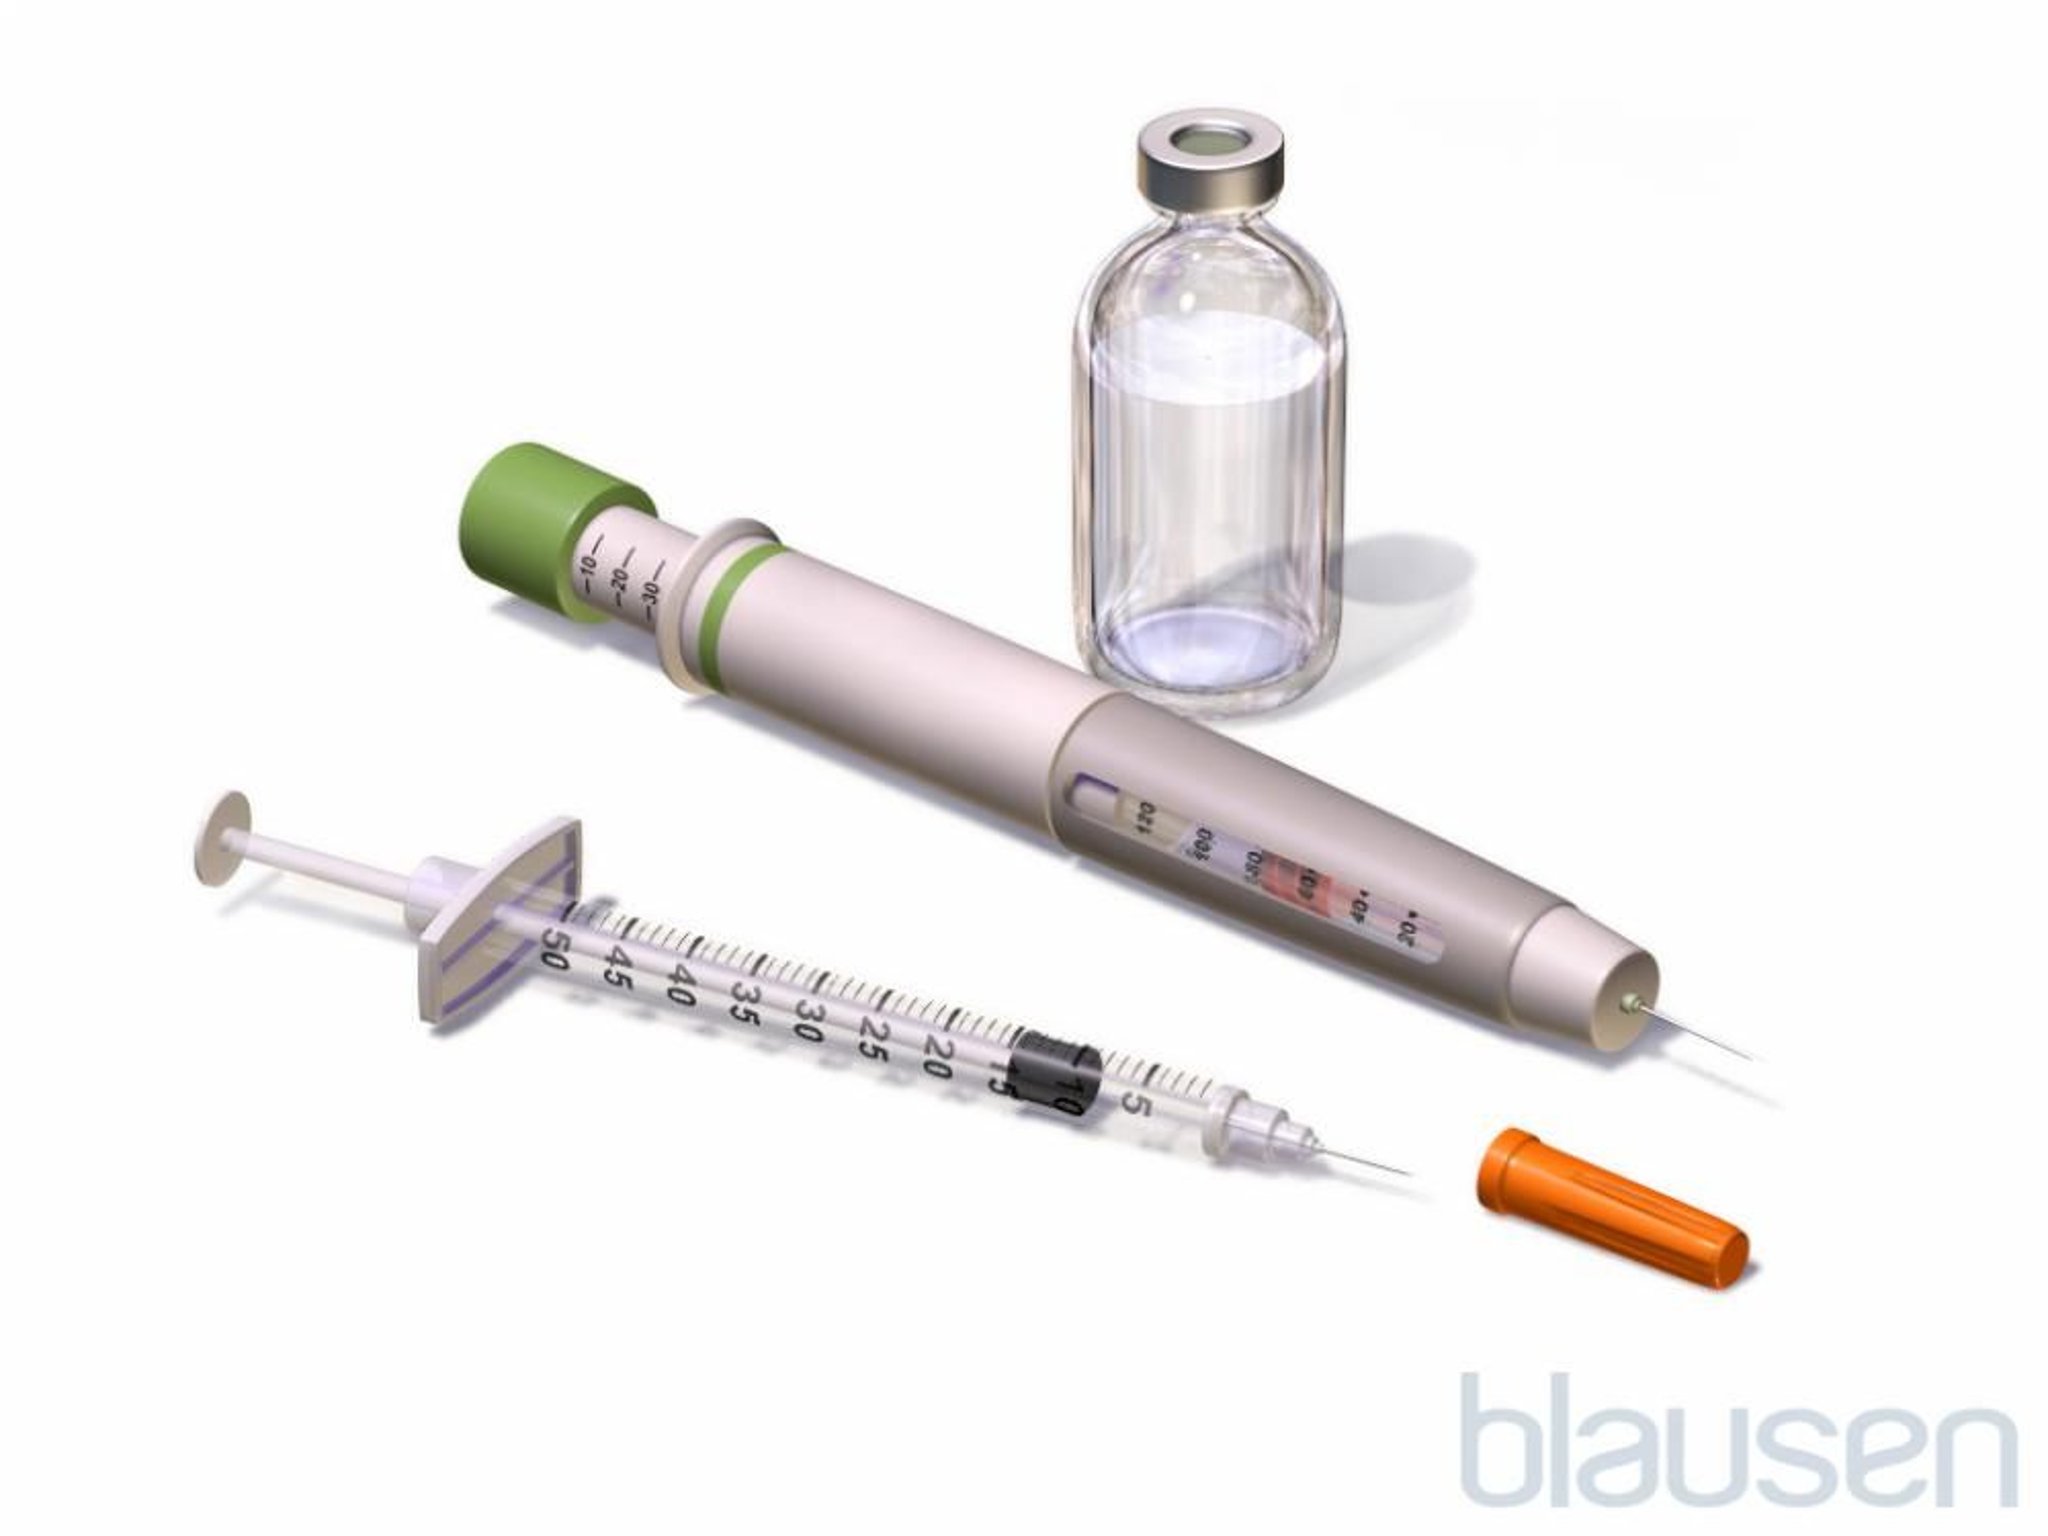 Une seringue à insuline et un stylo à insuline